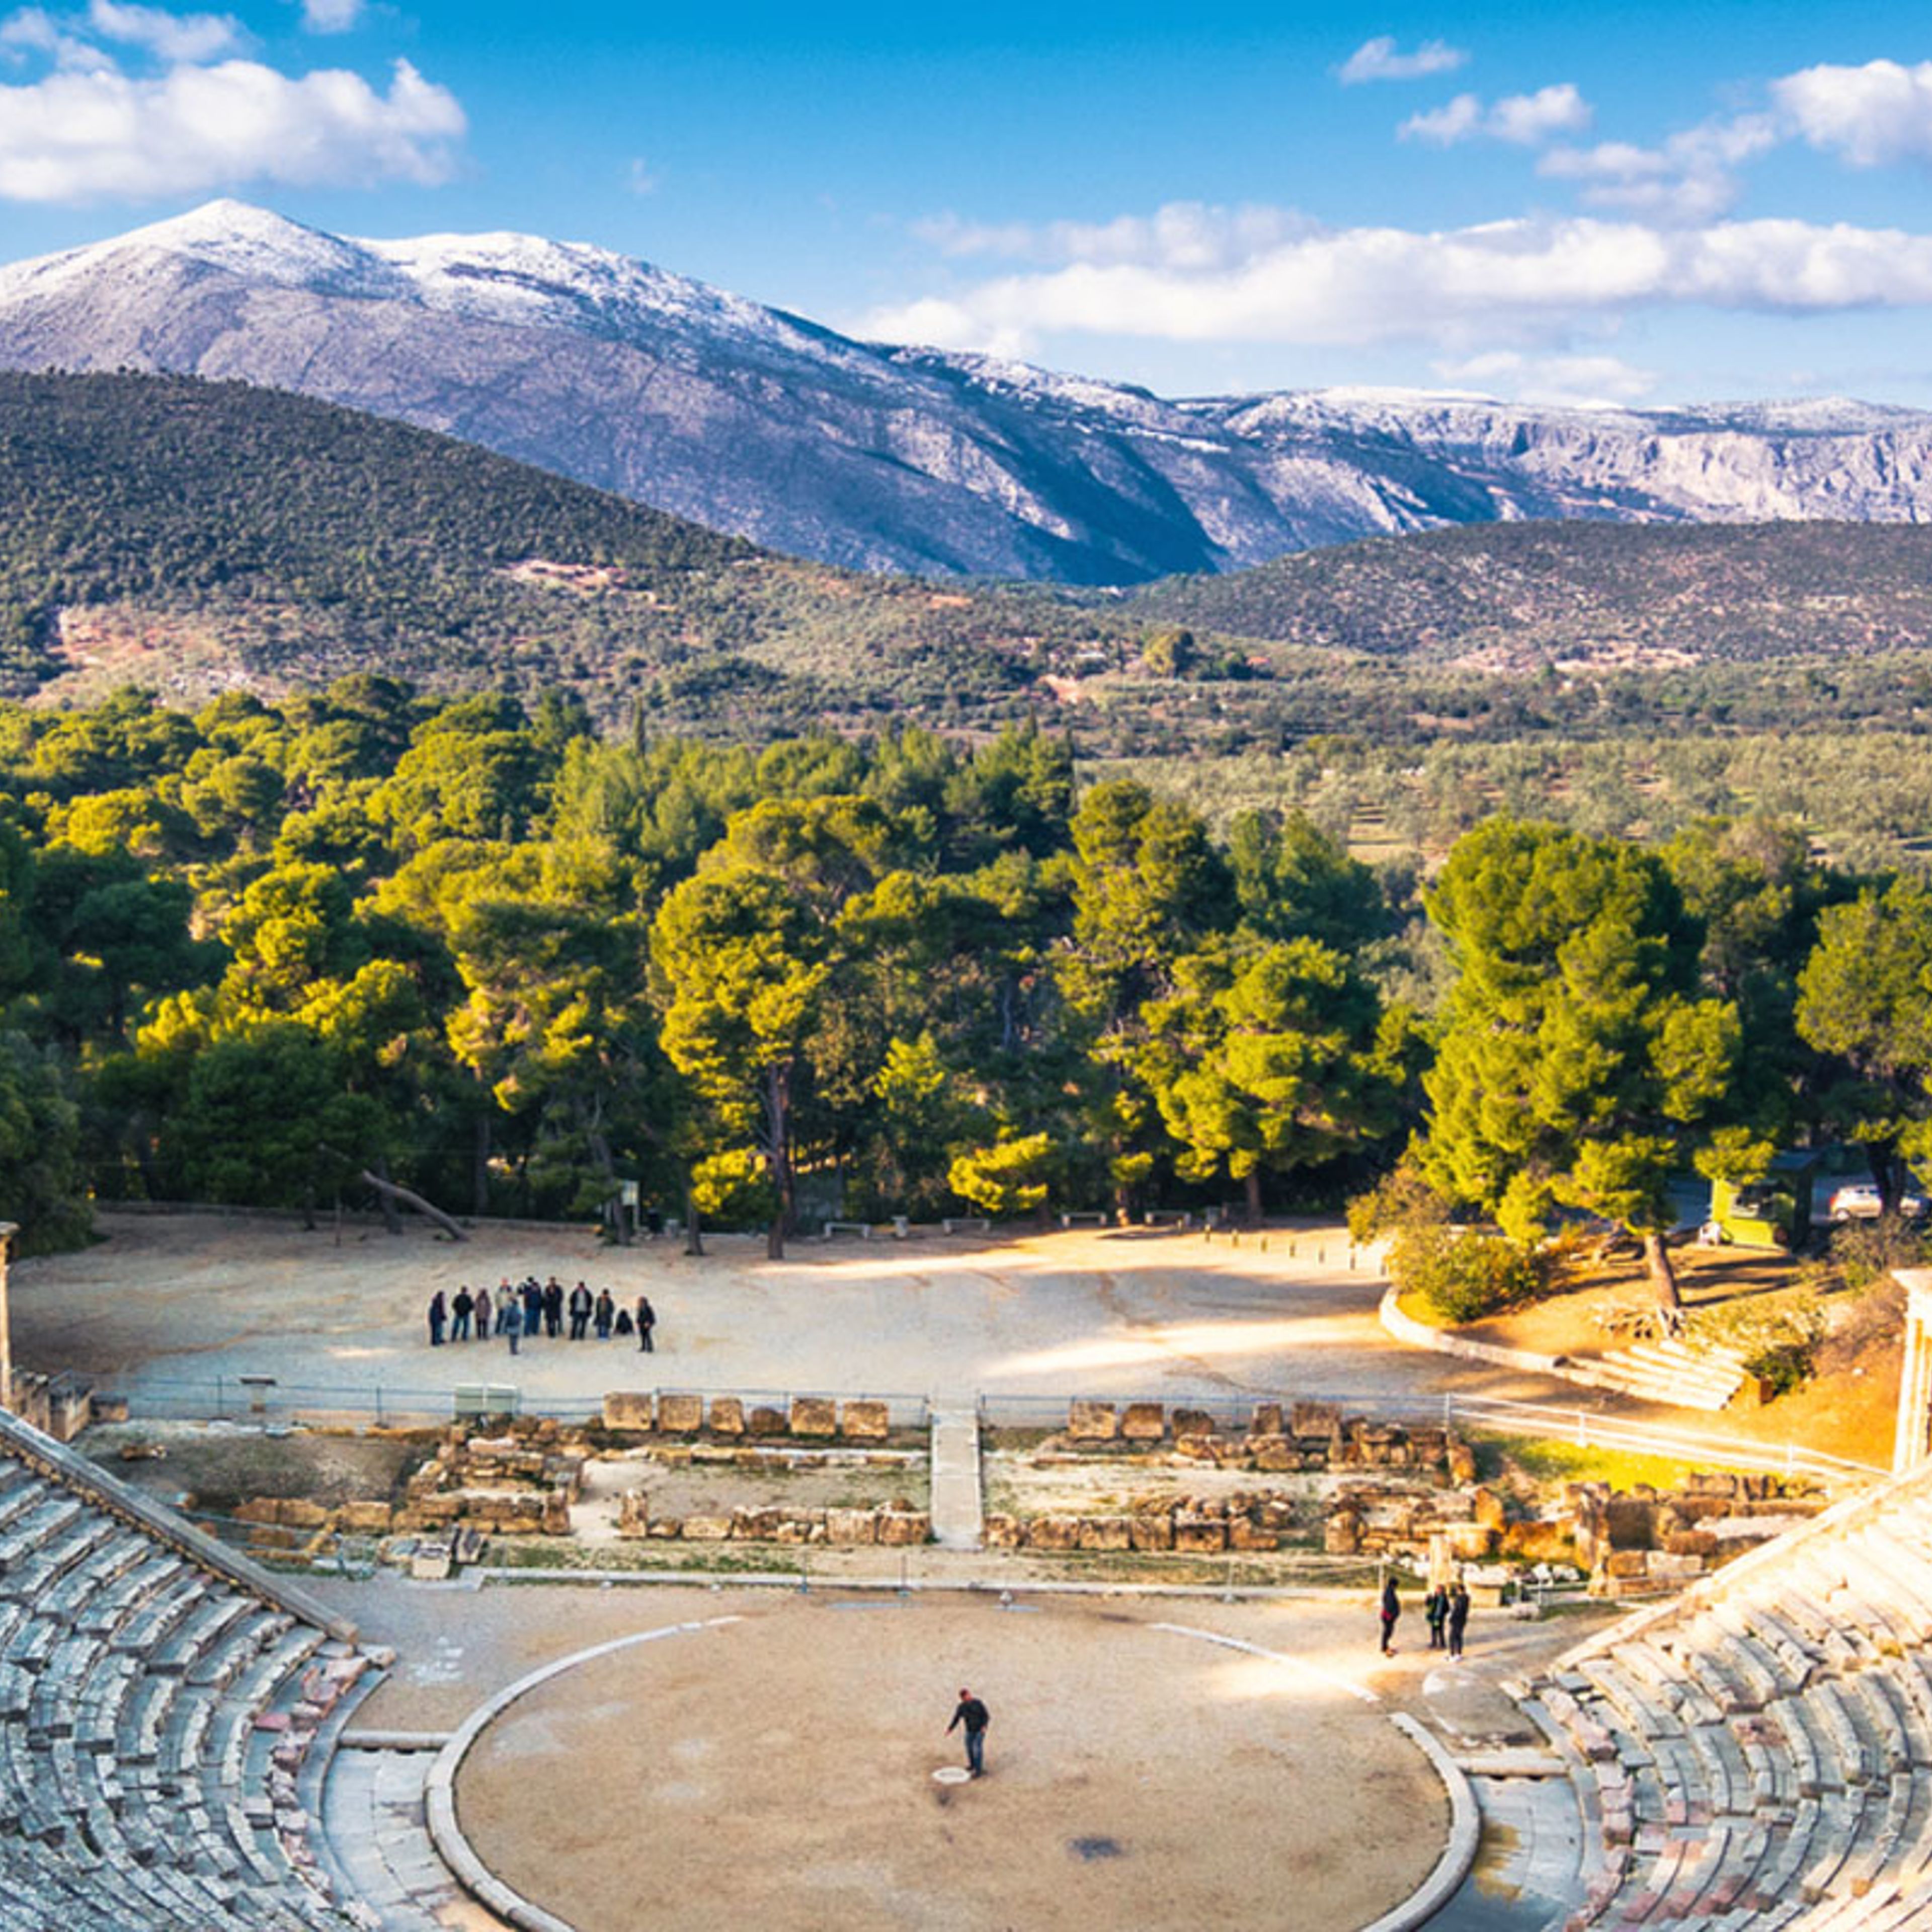 L'antico teatro di Epidauro (o "Epidauro")